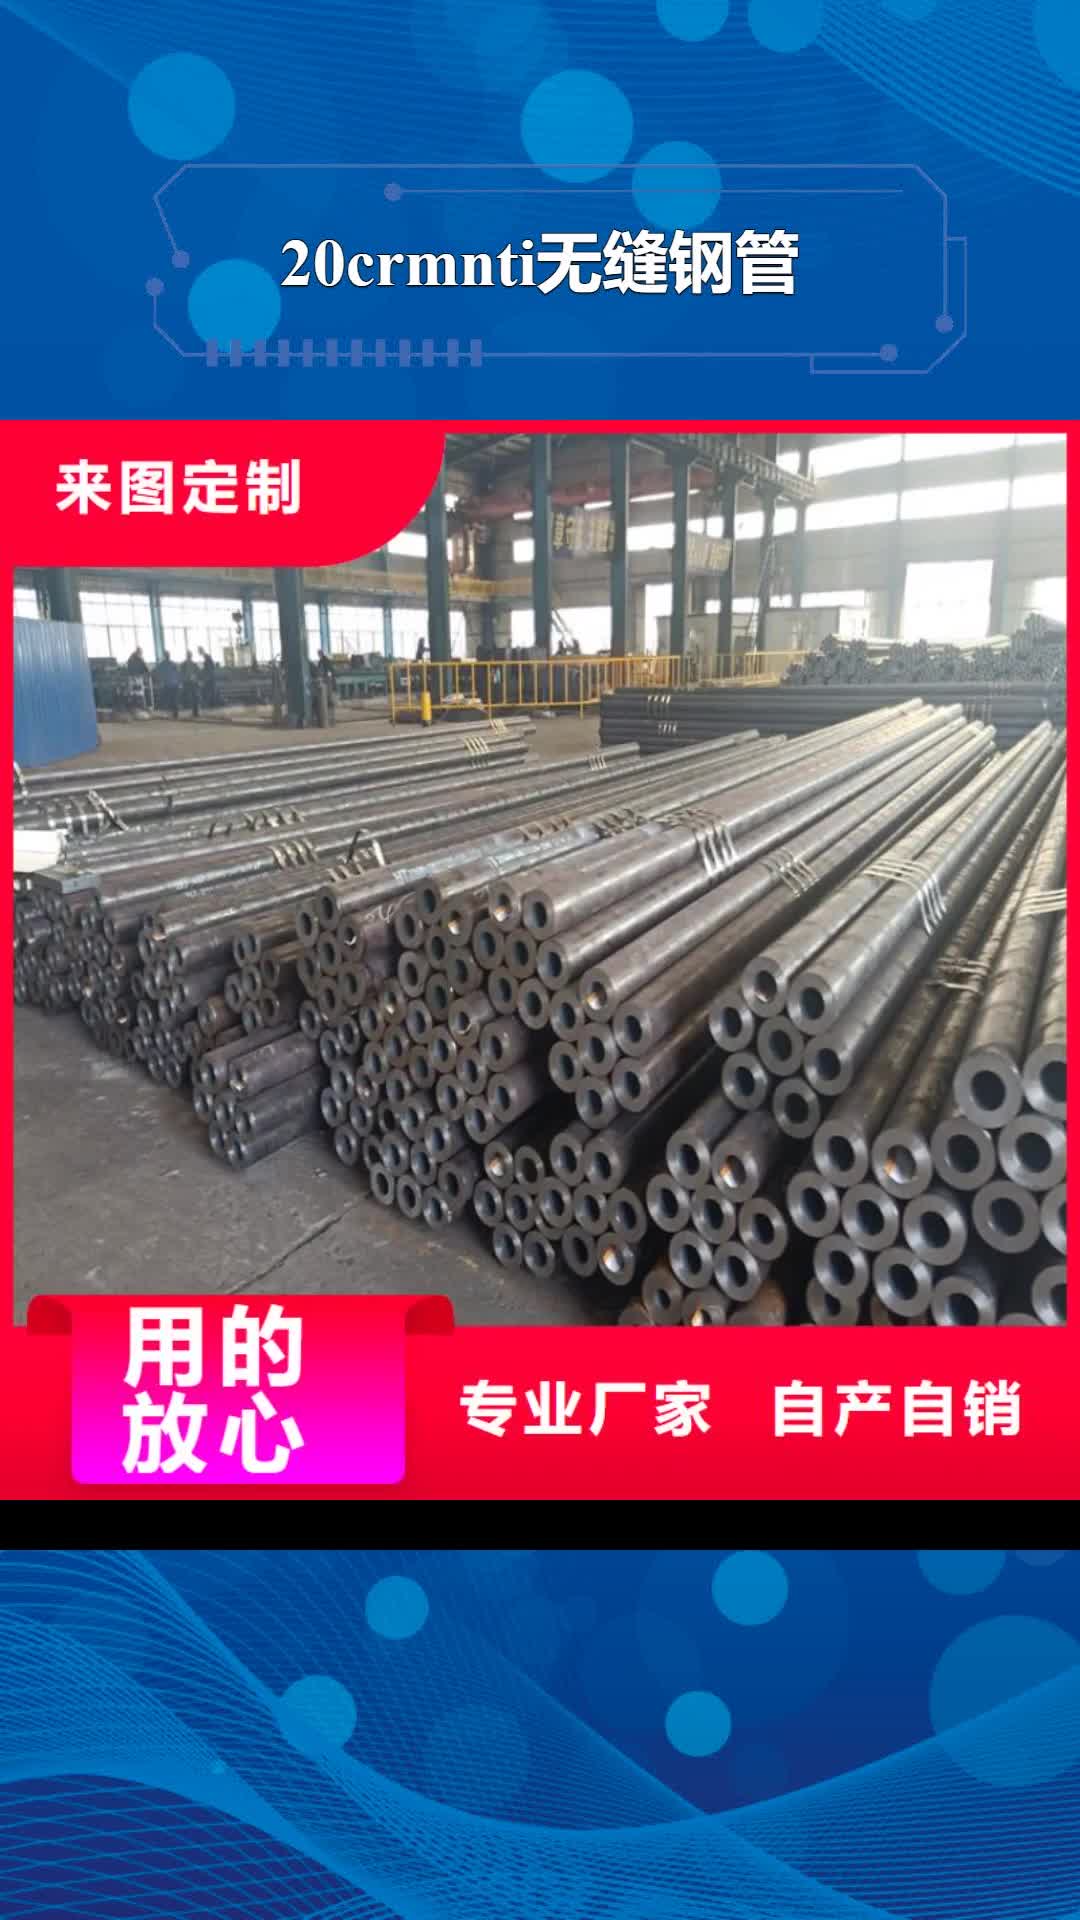 迪庆【20crmnti无缝钢管】-6061T6铝圆管一站式供应厂家